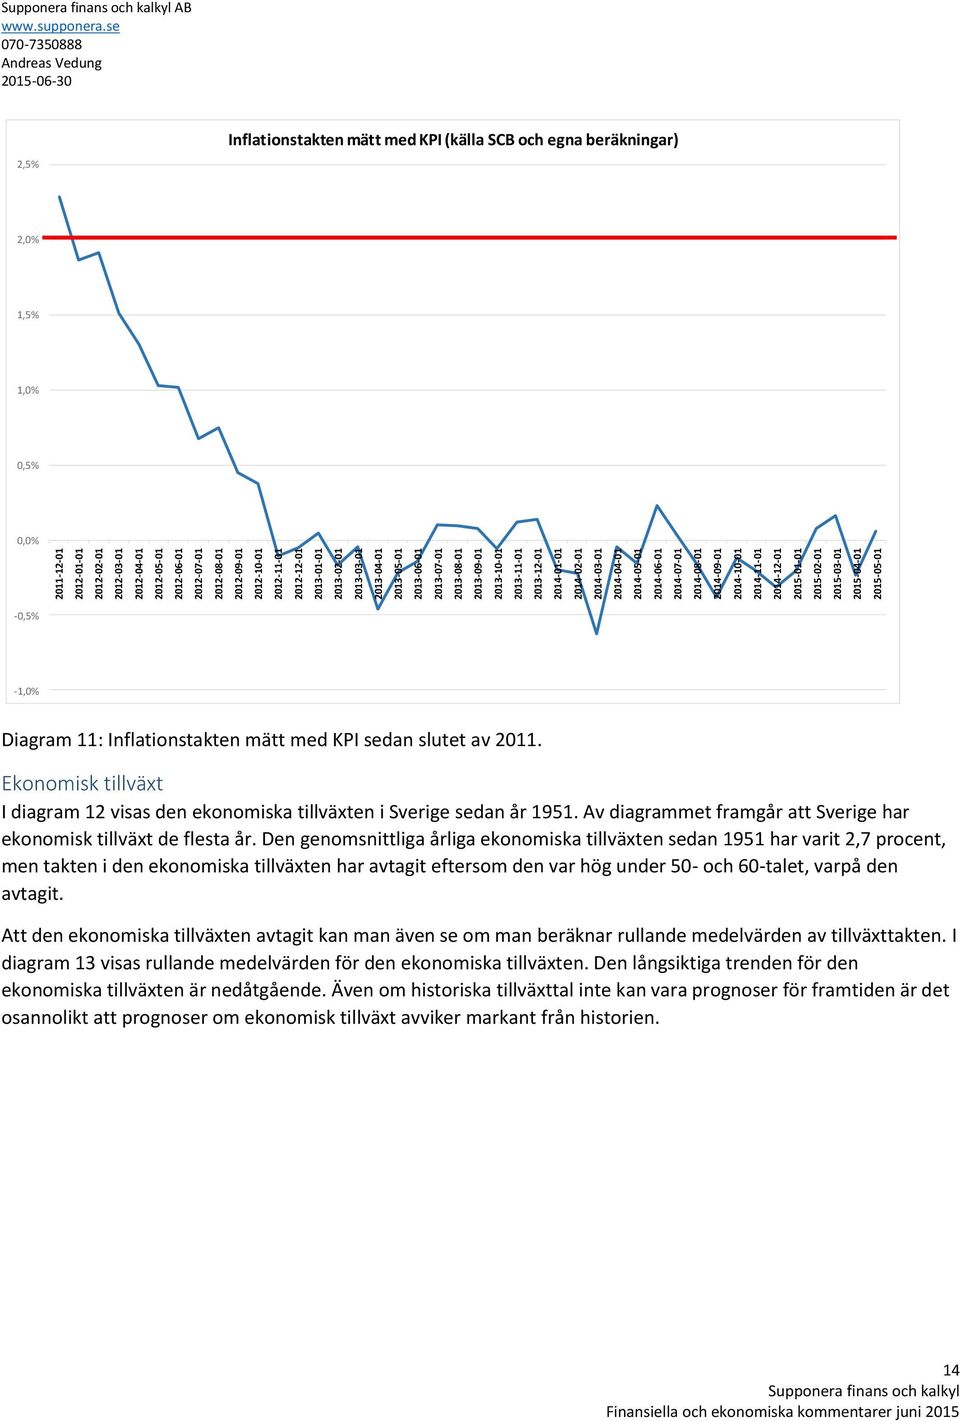 2014-12-01 2015-01-01 2015-02-01 2015-03-01 2015-04-01 2015-05-01 AB 2,5% Inflationstakten mätt med KPI (källa SCB och egna beräkningar) 2,0% 1,5% 1,0% 0,5% 0,0% -0,5% -1,0% Diagram 11: